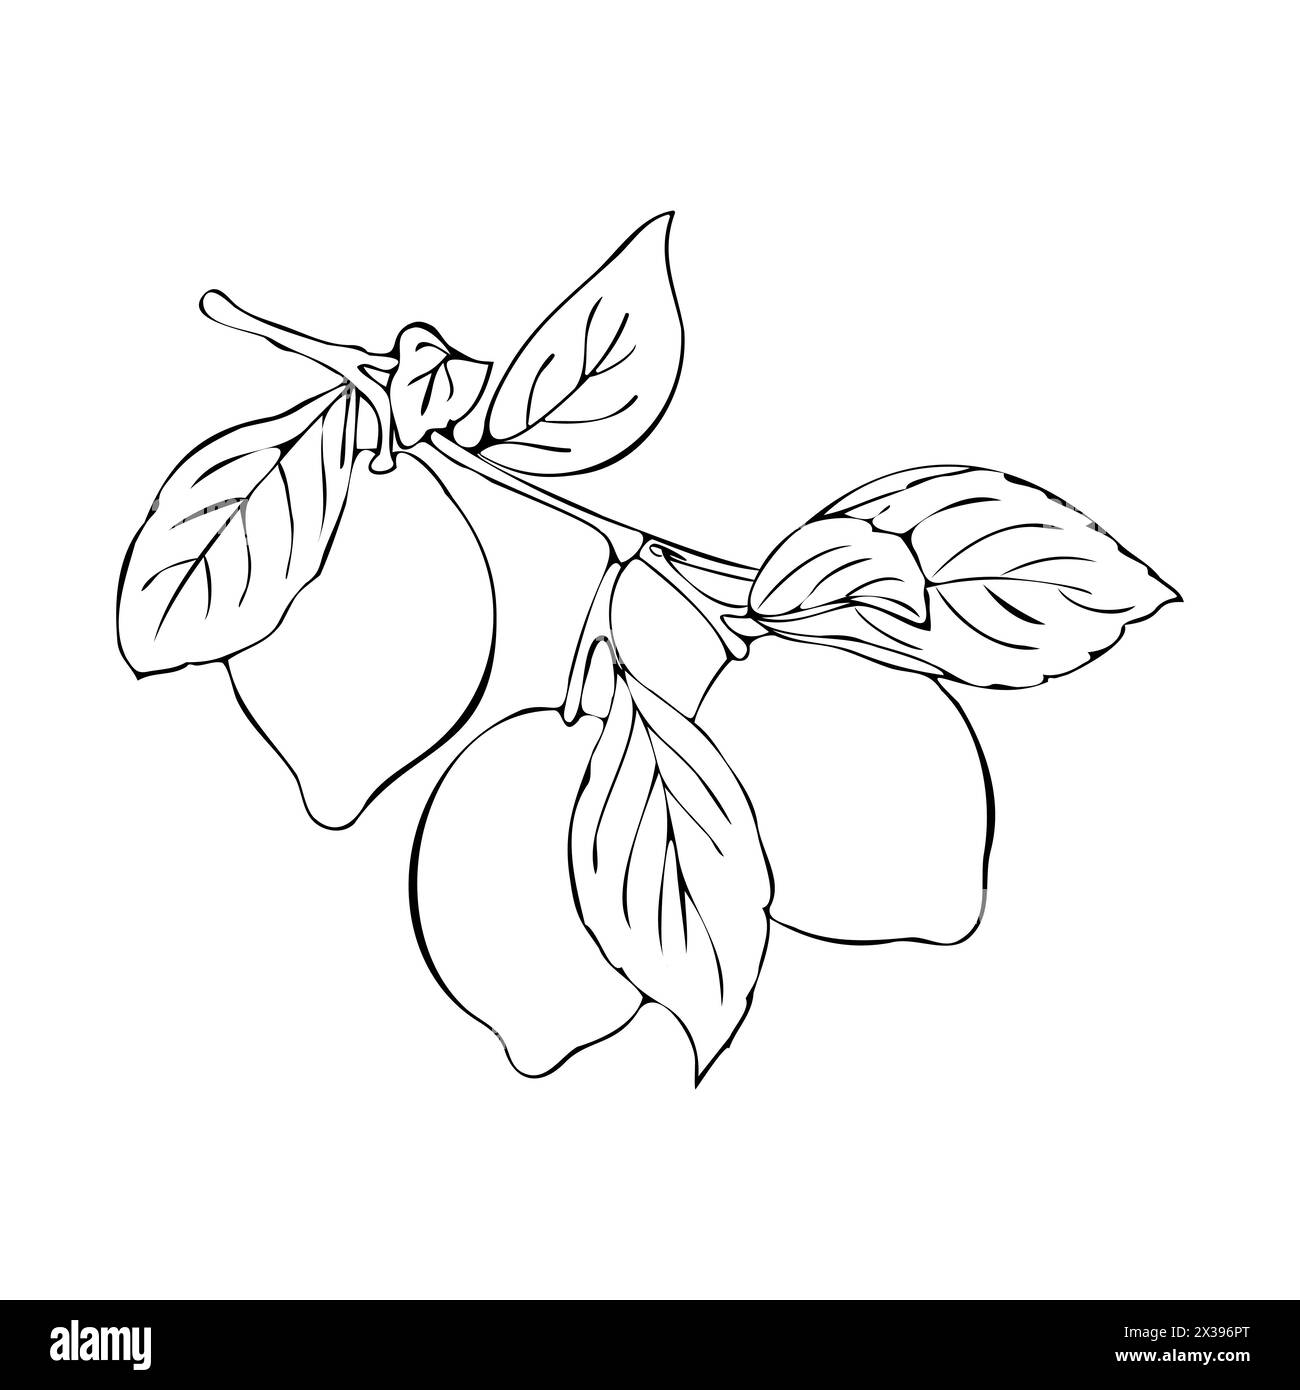 Kontur des Zweiges mit Früchten von Zitrusfrüchten Limette oder Zitrone, handgezeichnete Skizze, isoliert, weißer Hintergrund. Vektorabbildung Stock Vektor